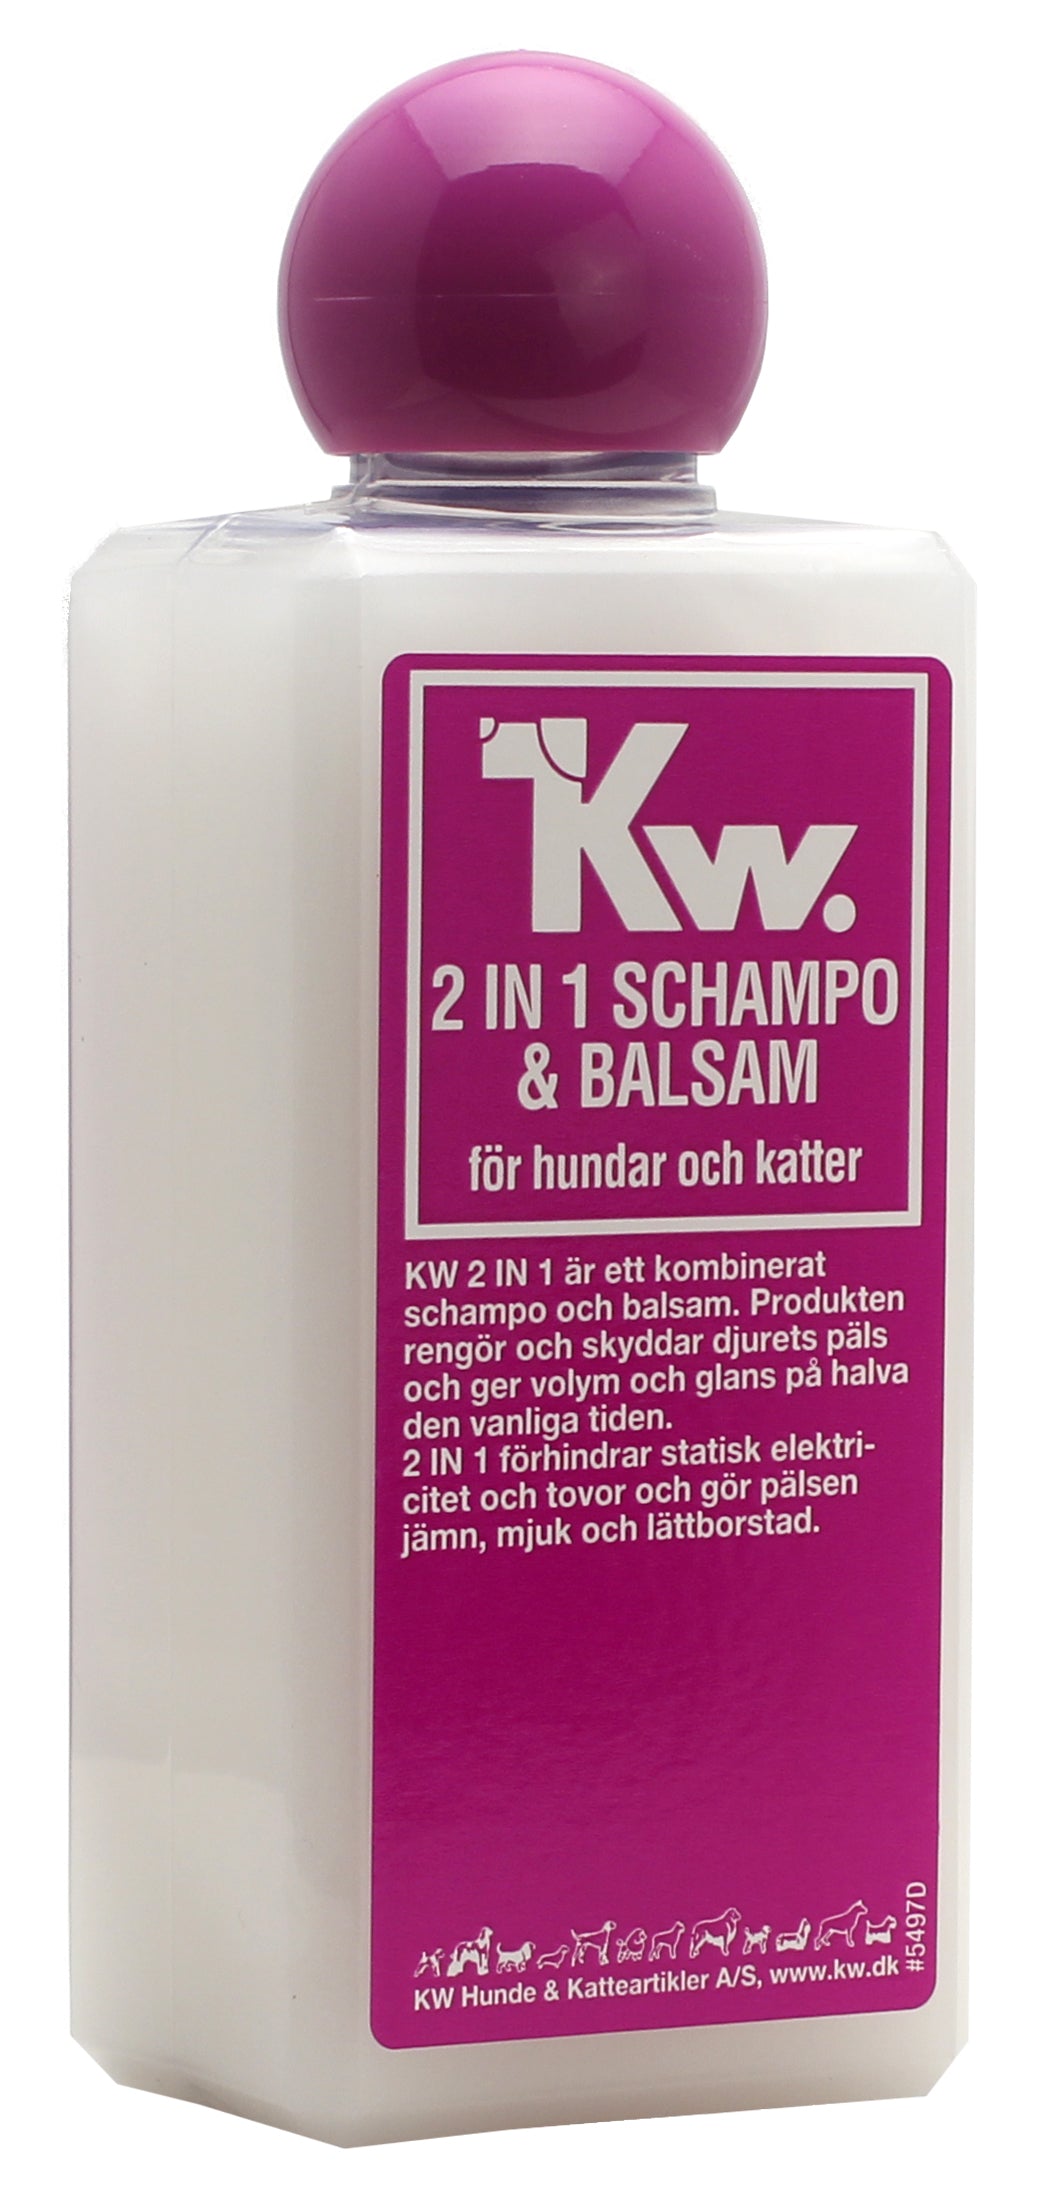 2-i-1 Schampo & Balsam